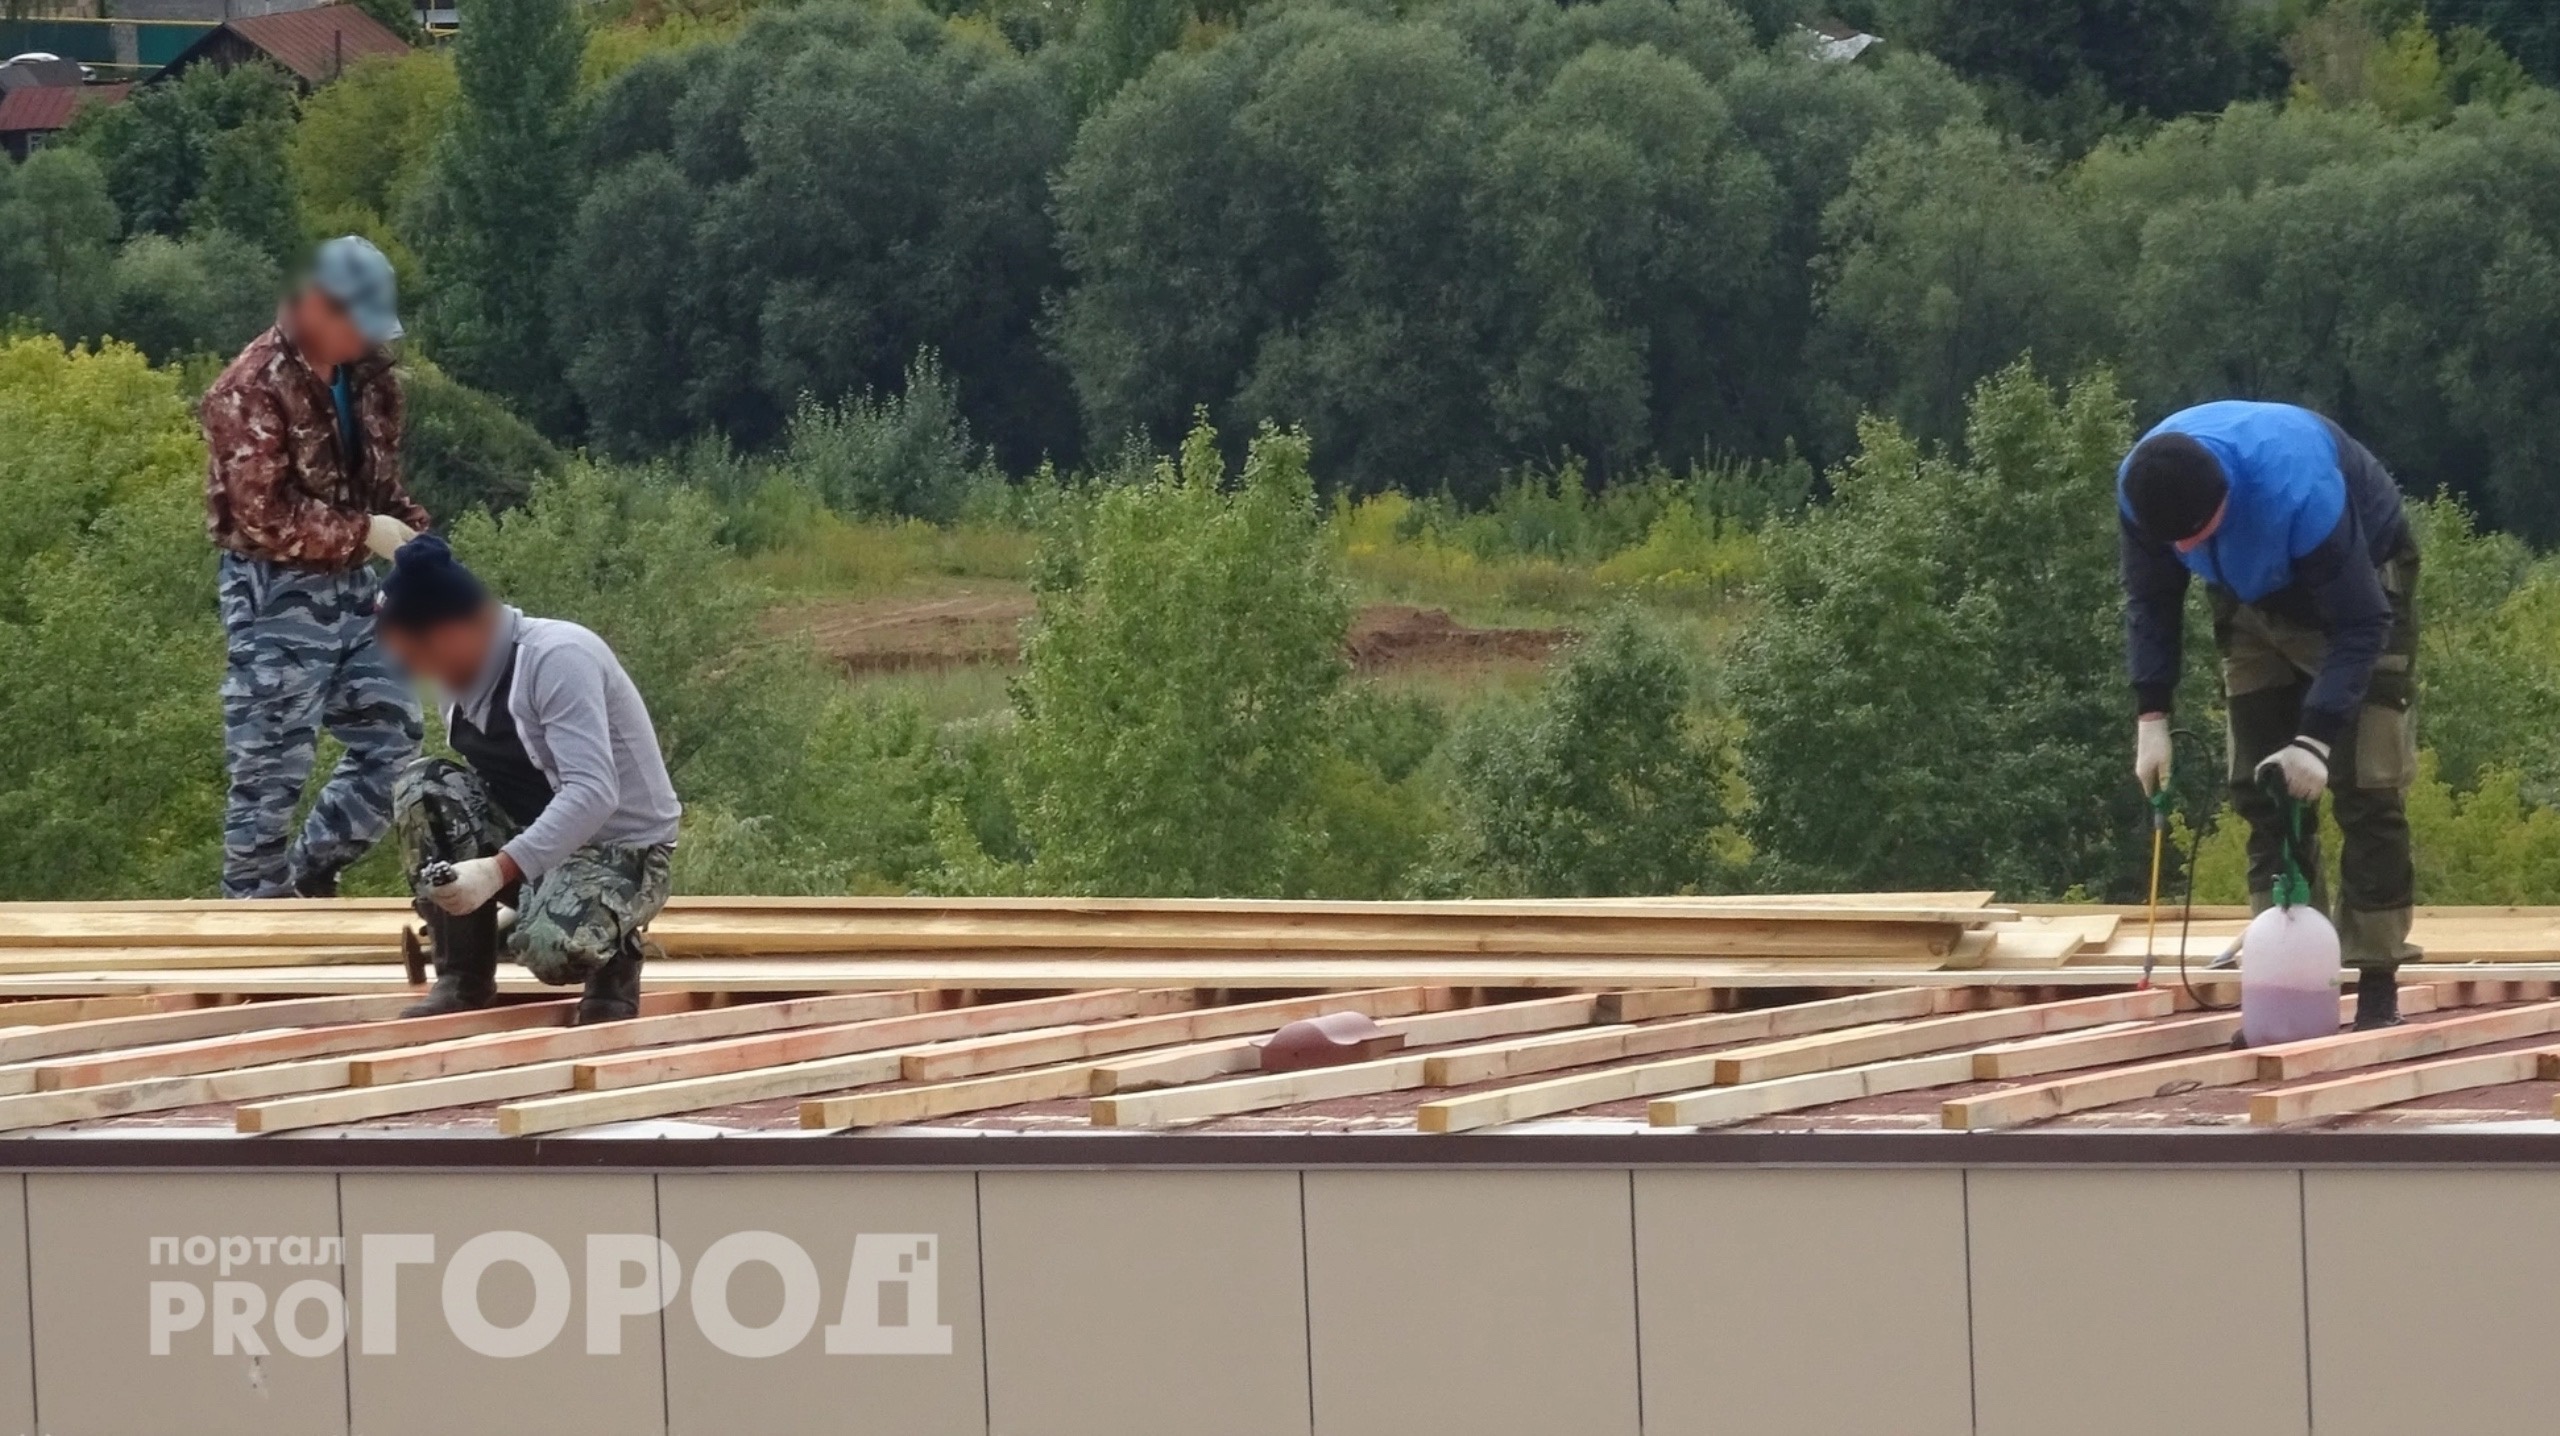 Житель Ядрина получит более 600 тысяч рублей от управляющей компании за разбитый наледью потолок  